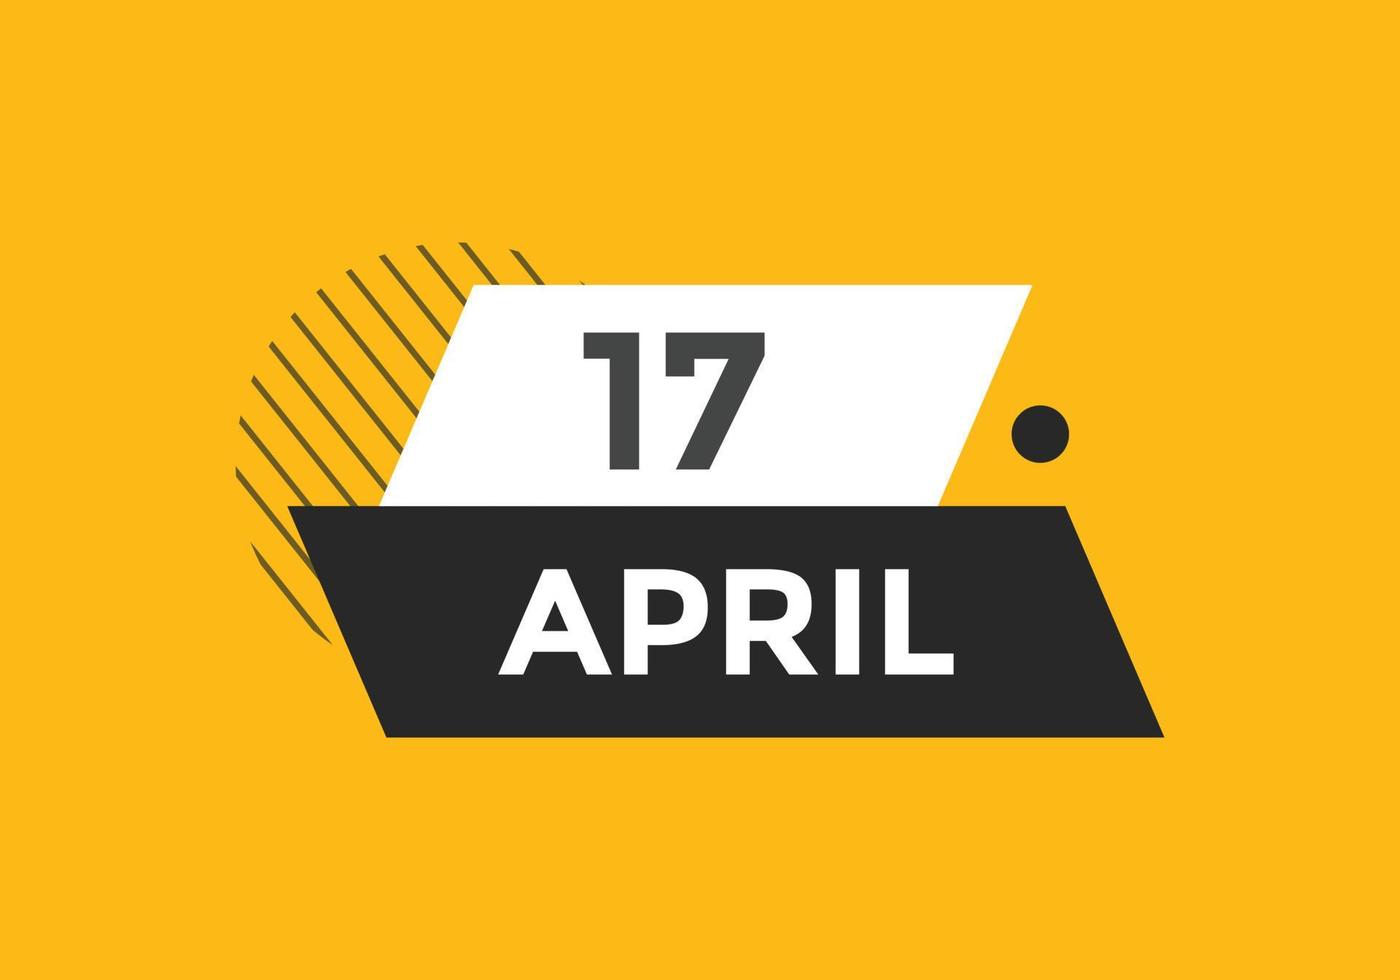 lembrete de calendário de 17 de abril. Modelo de ícone de calendário diário de 17 de abril. modelo de design de ícone de calendário 17 de abril. ilustração vetorial vetor